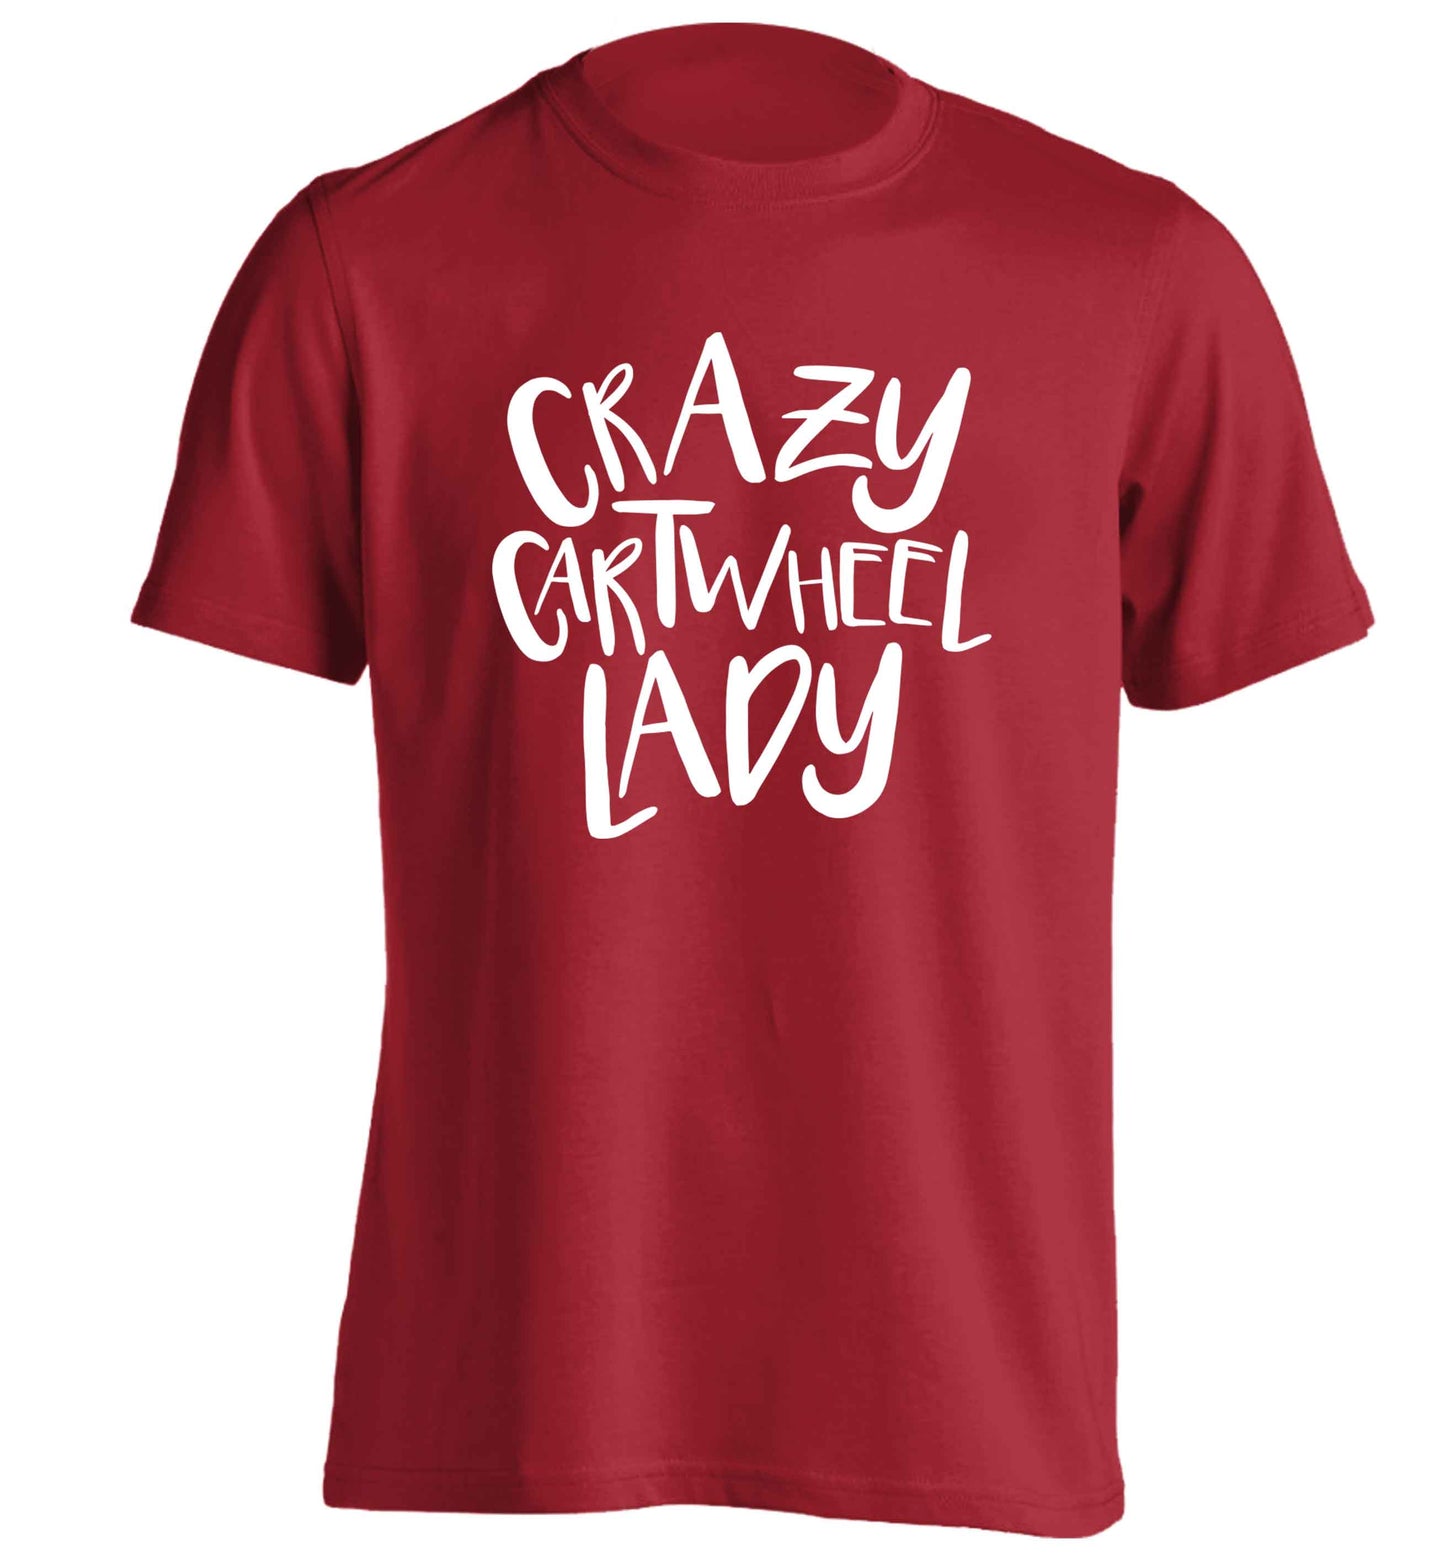 Crazy cartwheel lady adults unisex red Tshirt 2XL